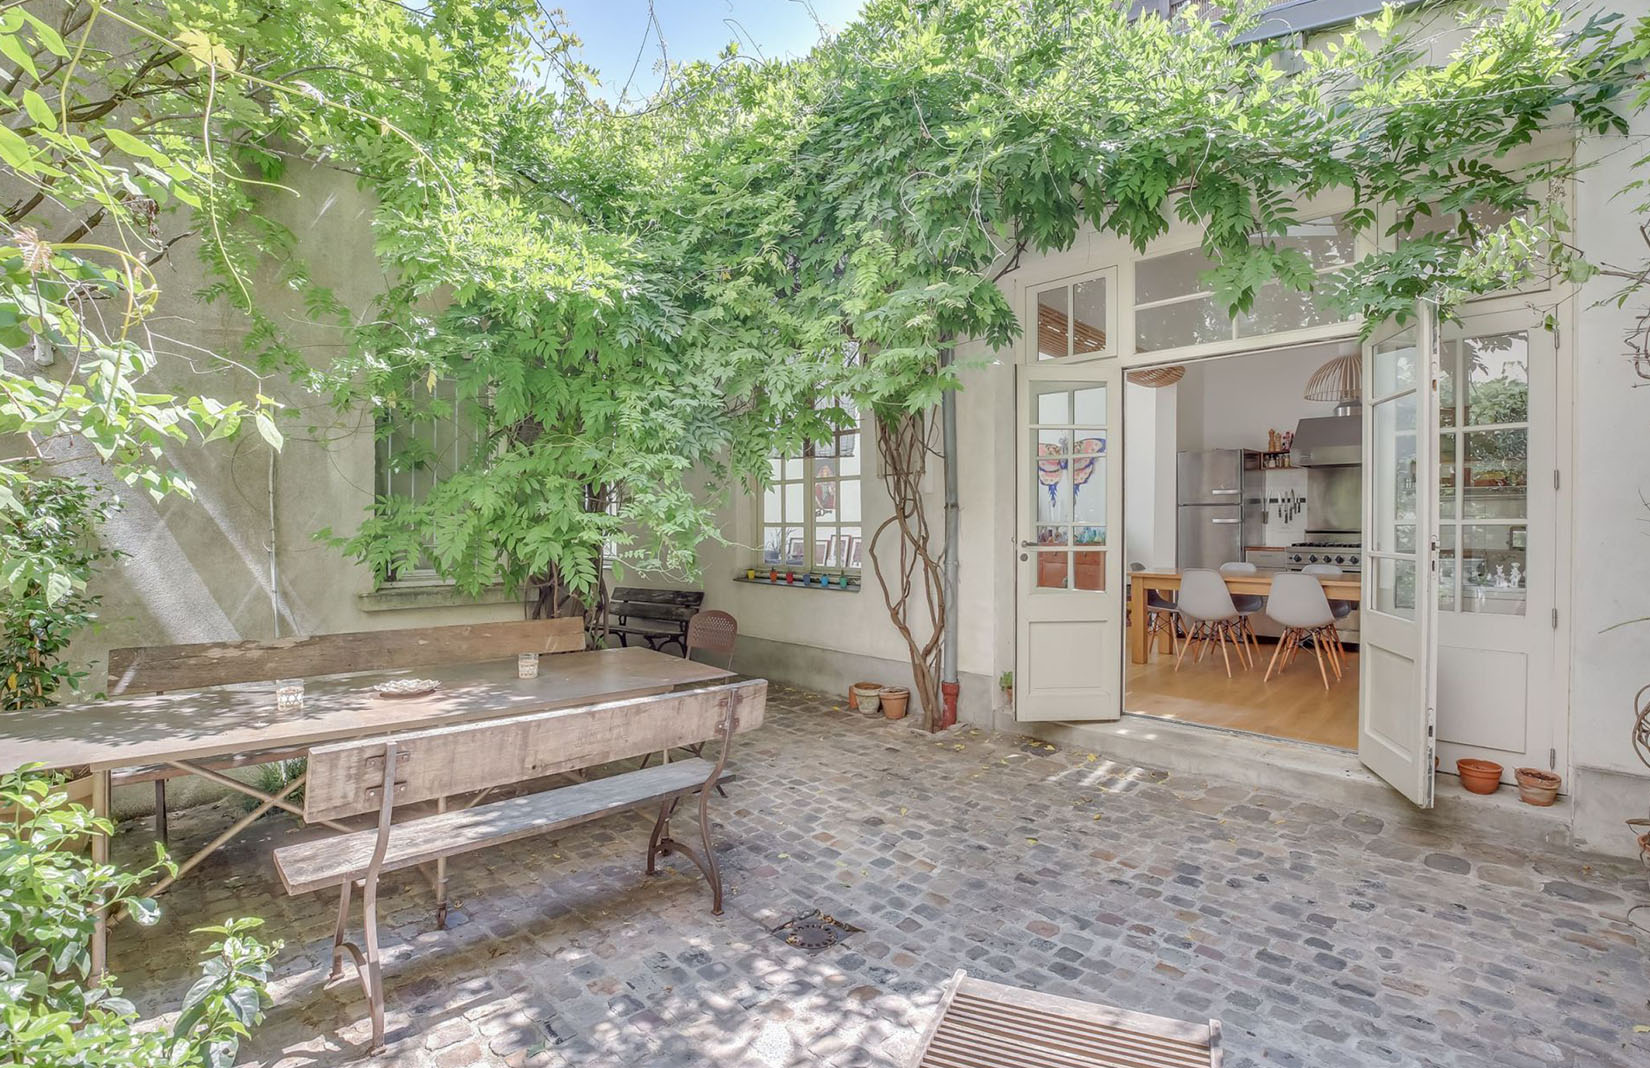 Parisian atelier home for sale